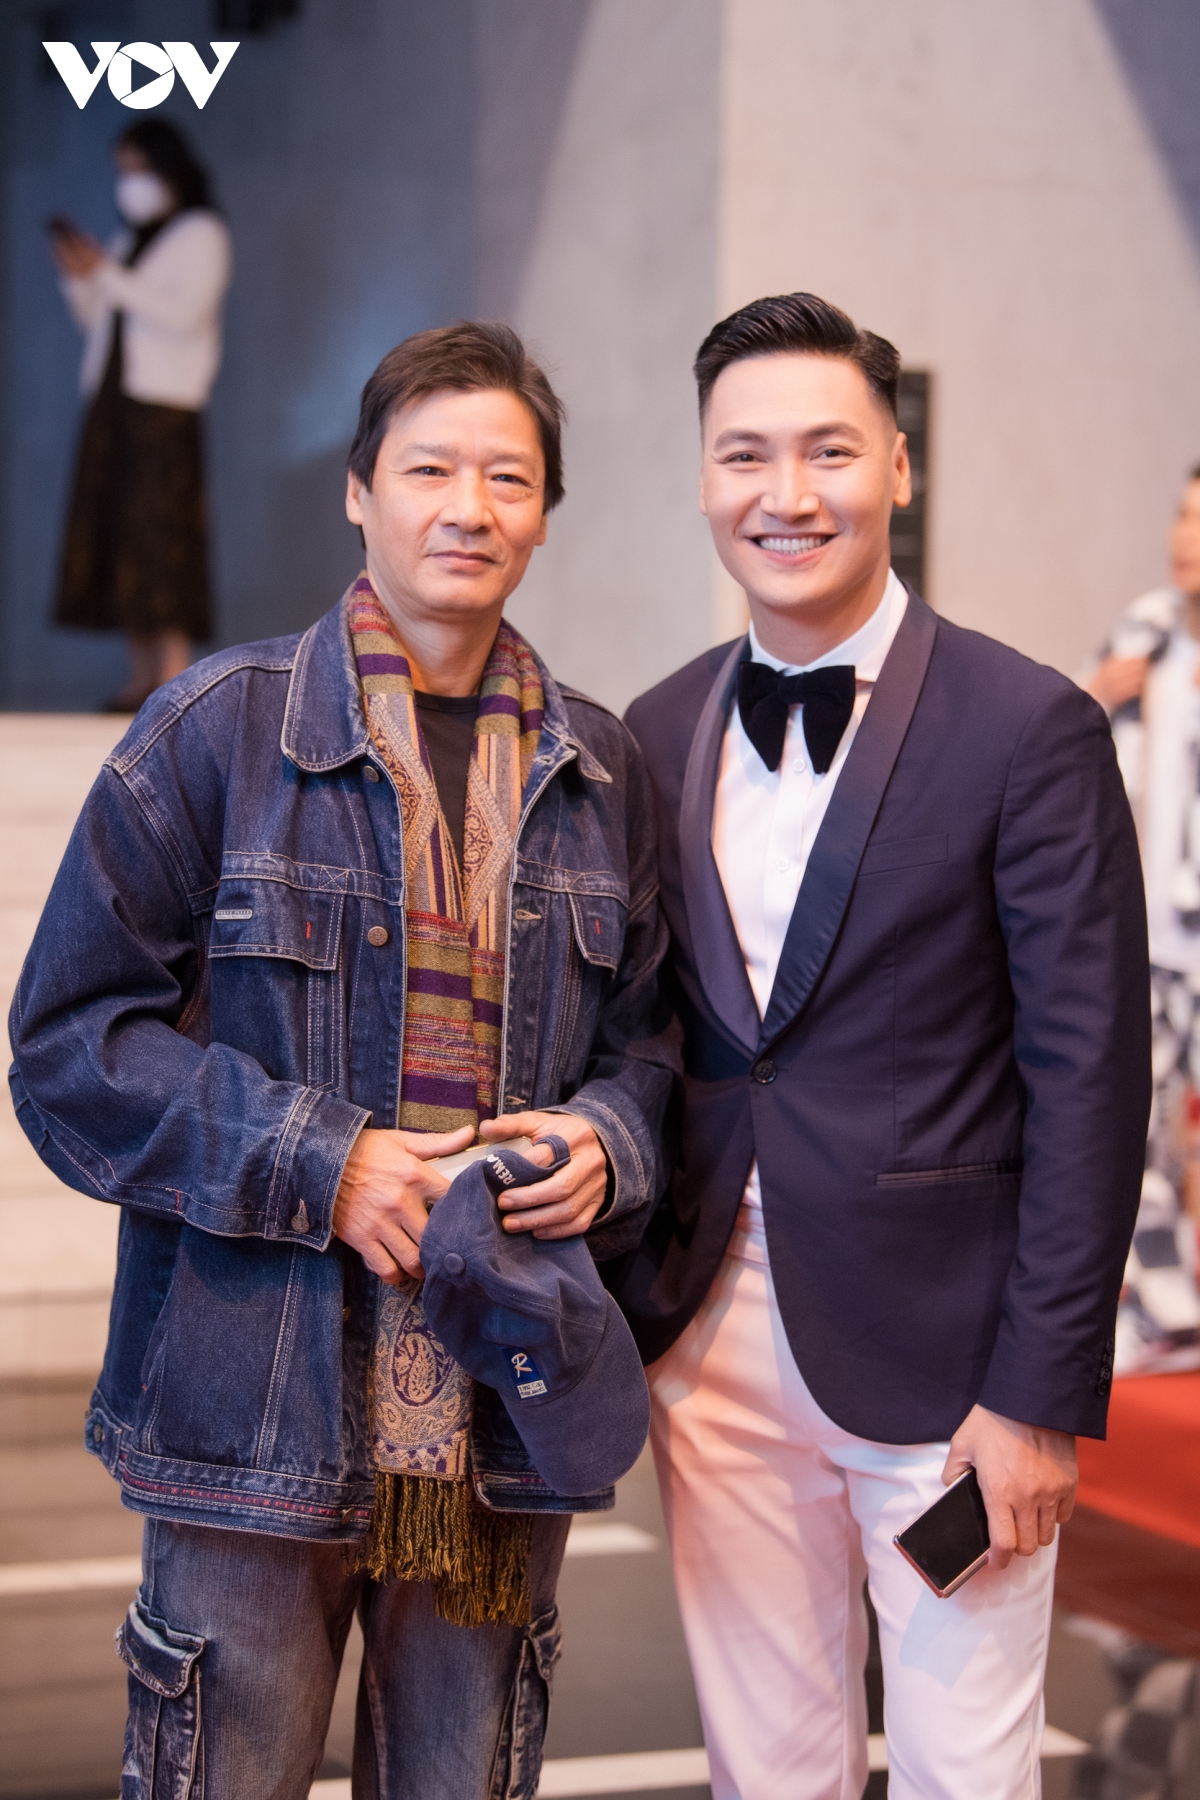 Khả Ngân sát cánh cùng Thanh Sơn tại VTV Awards 2021 - Ảnh 9.